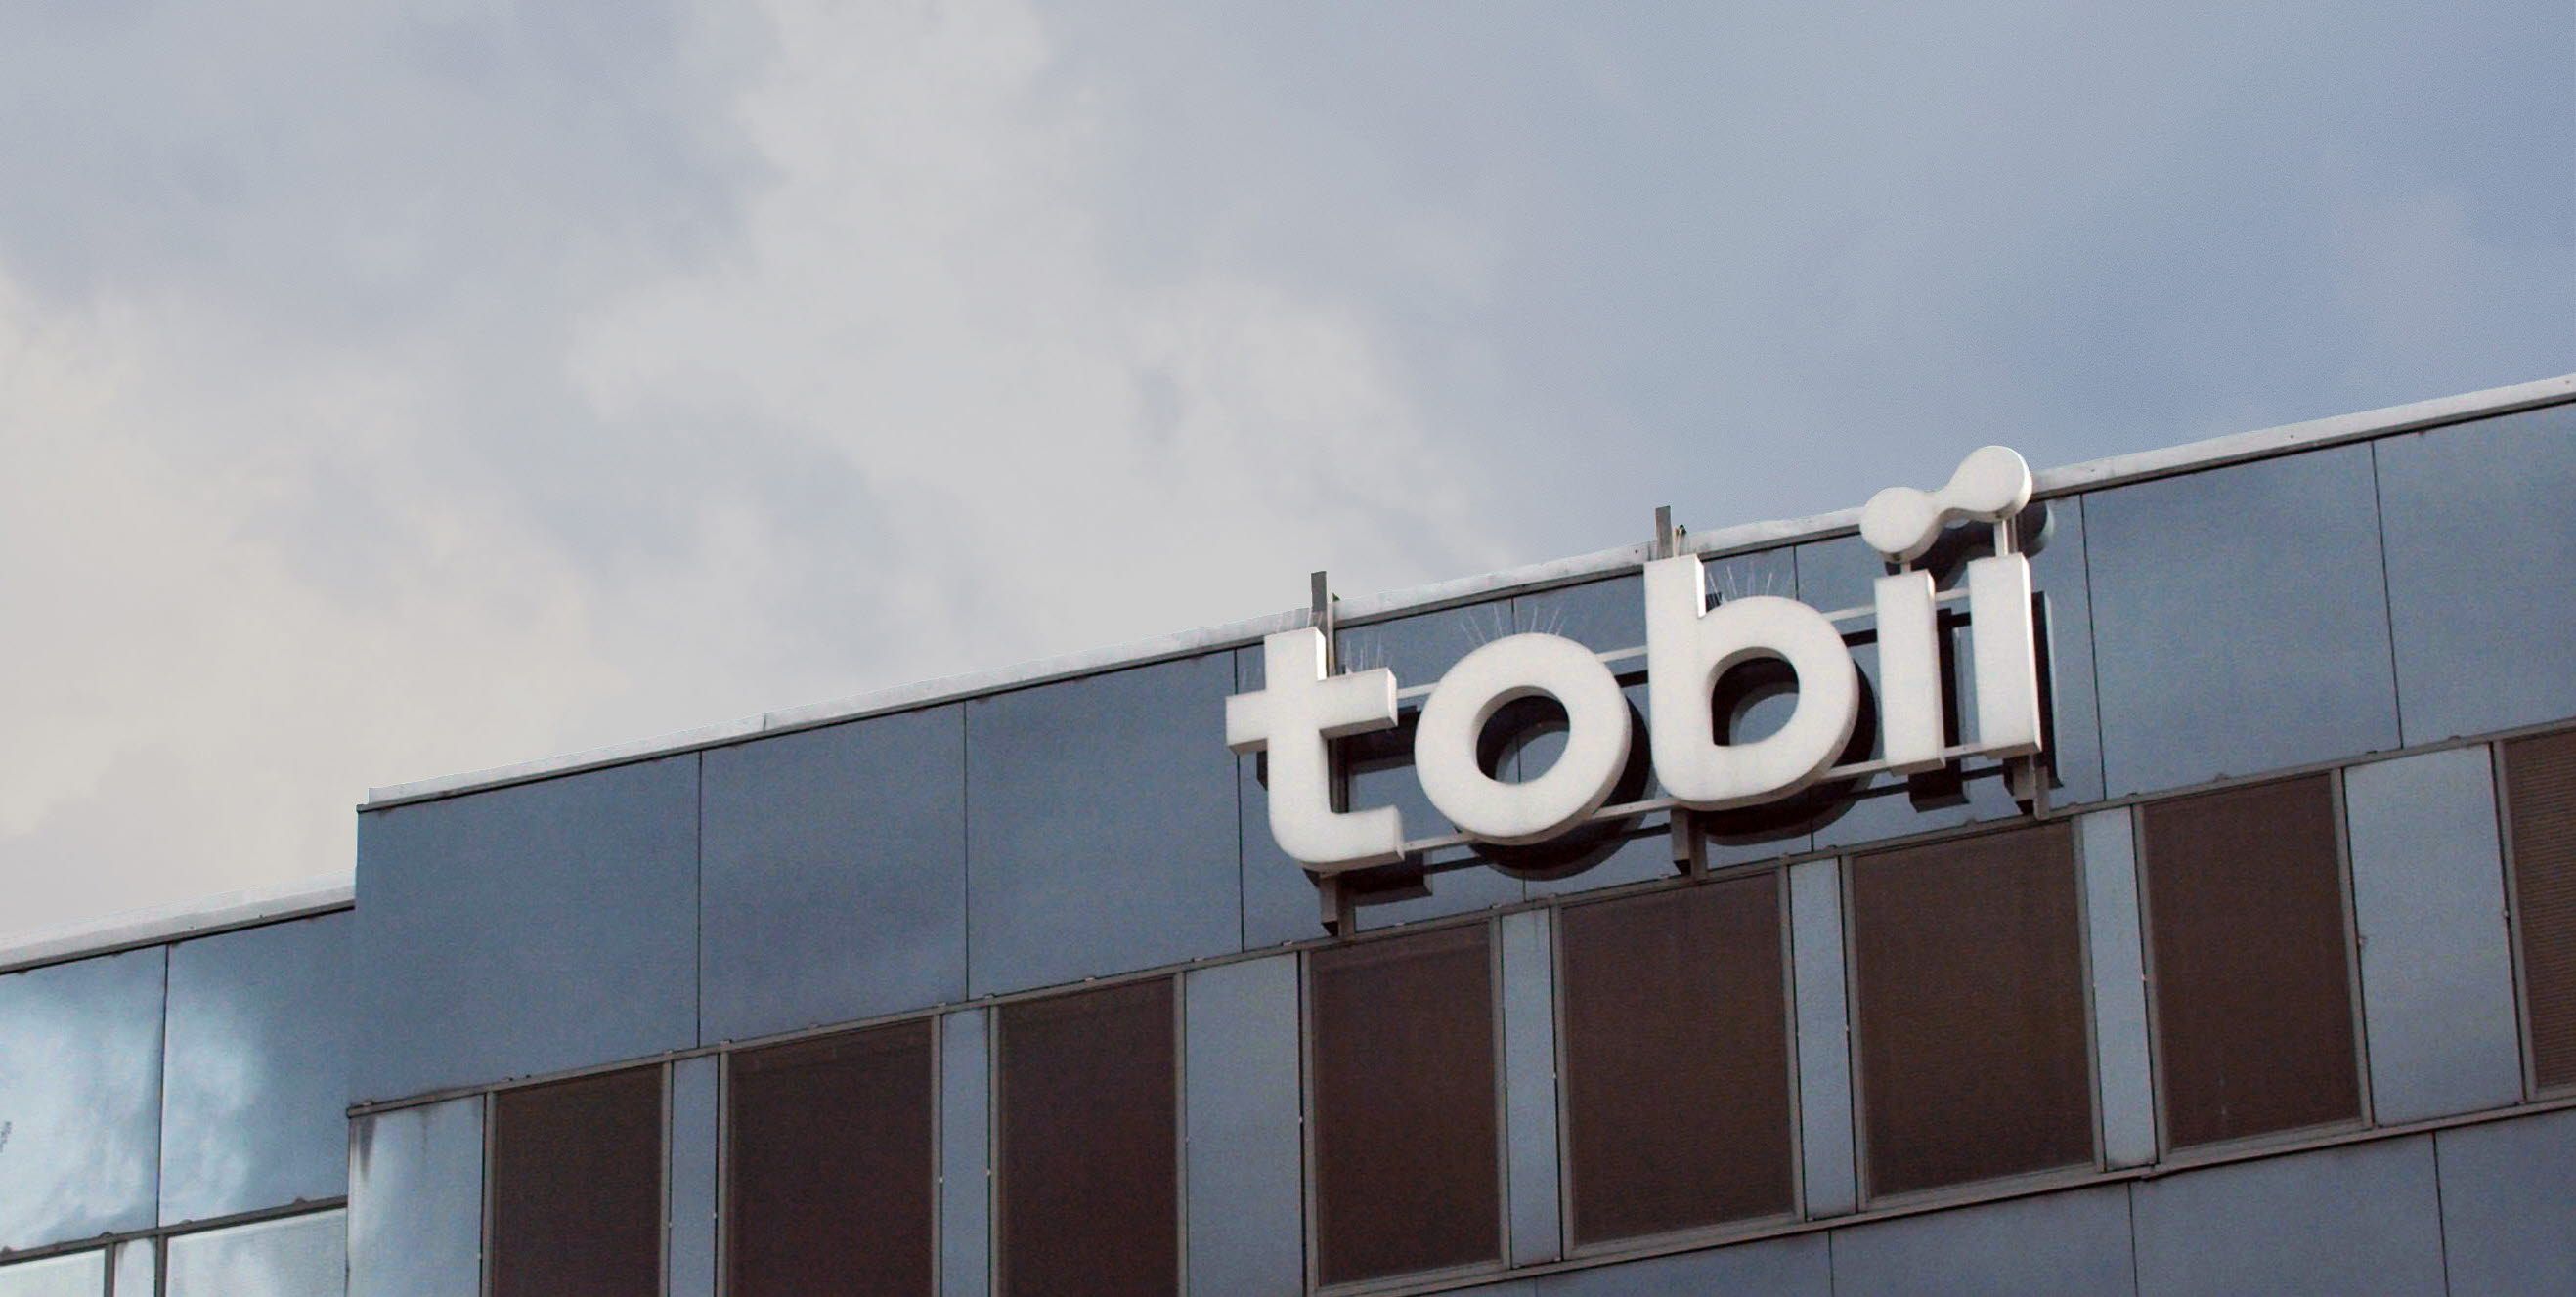 Tobii office - Stockholm